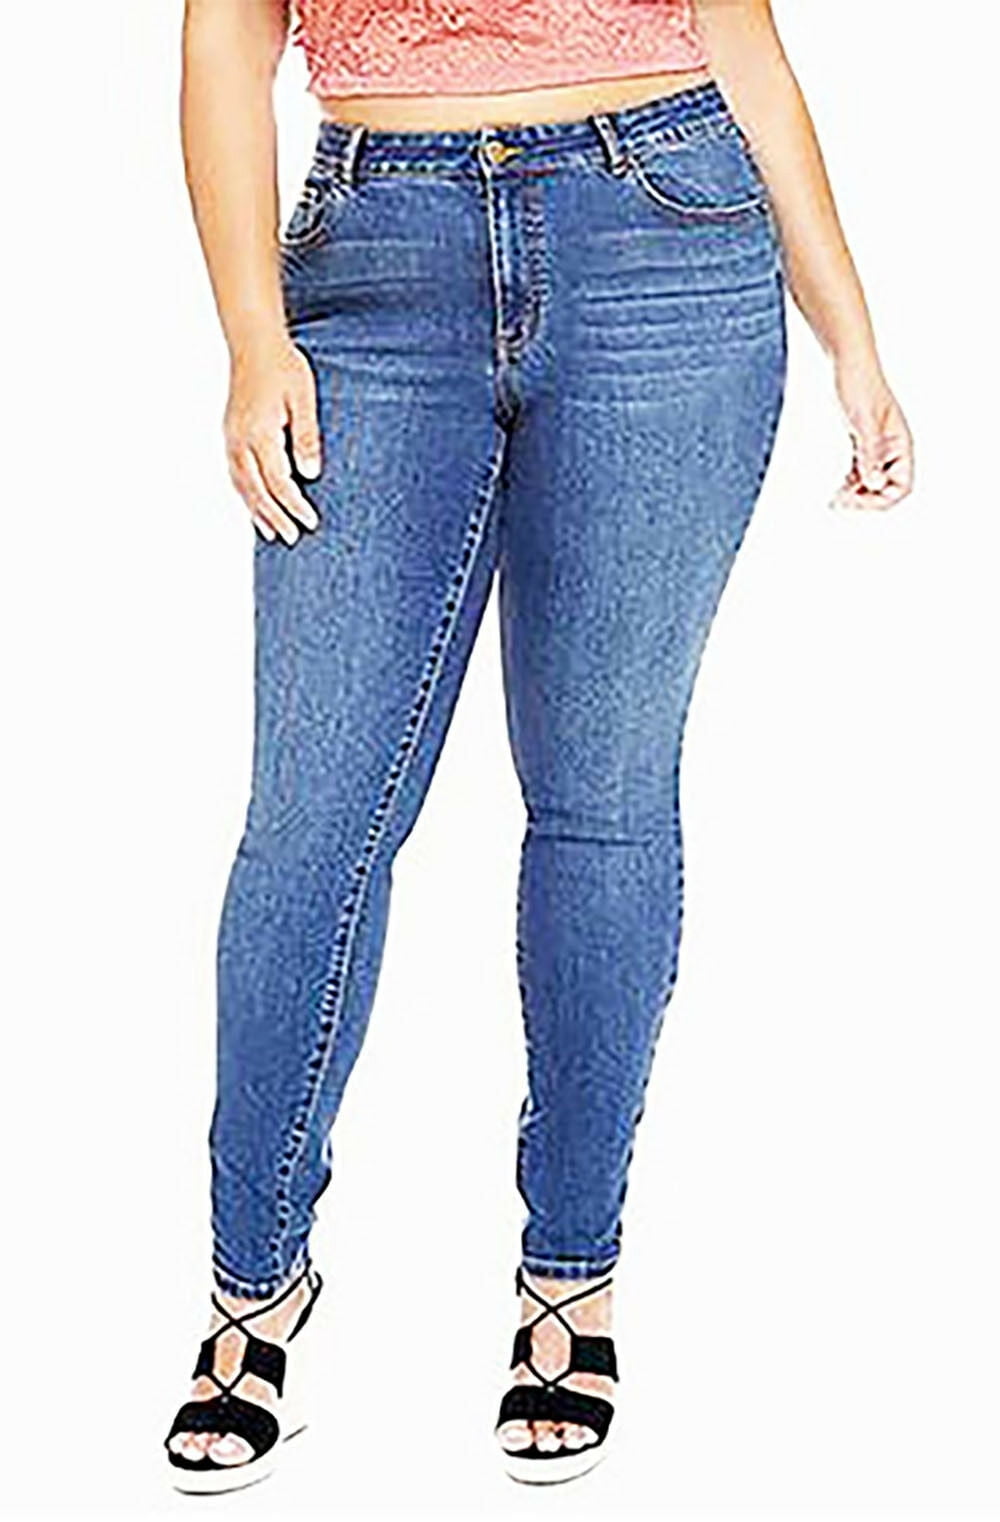 size 18w jeans